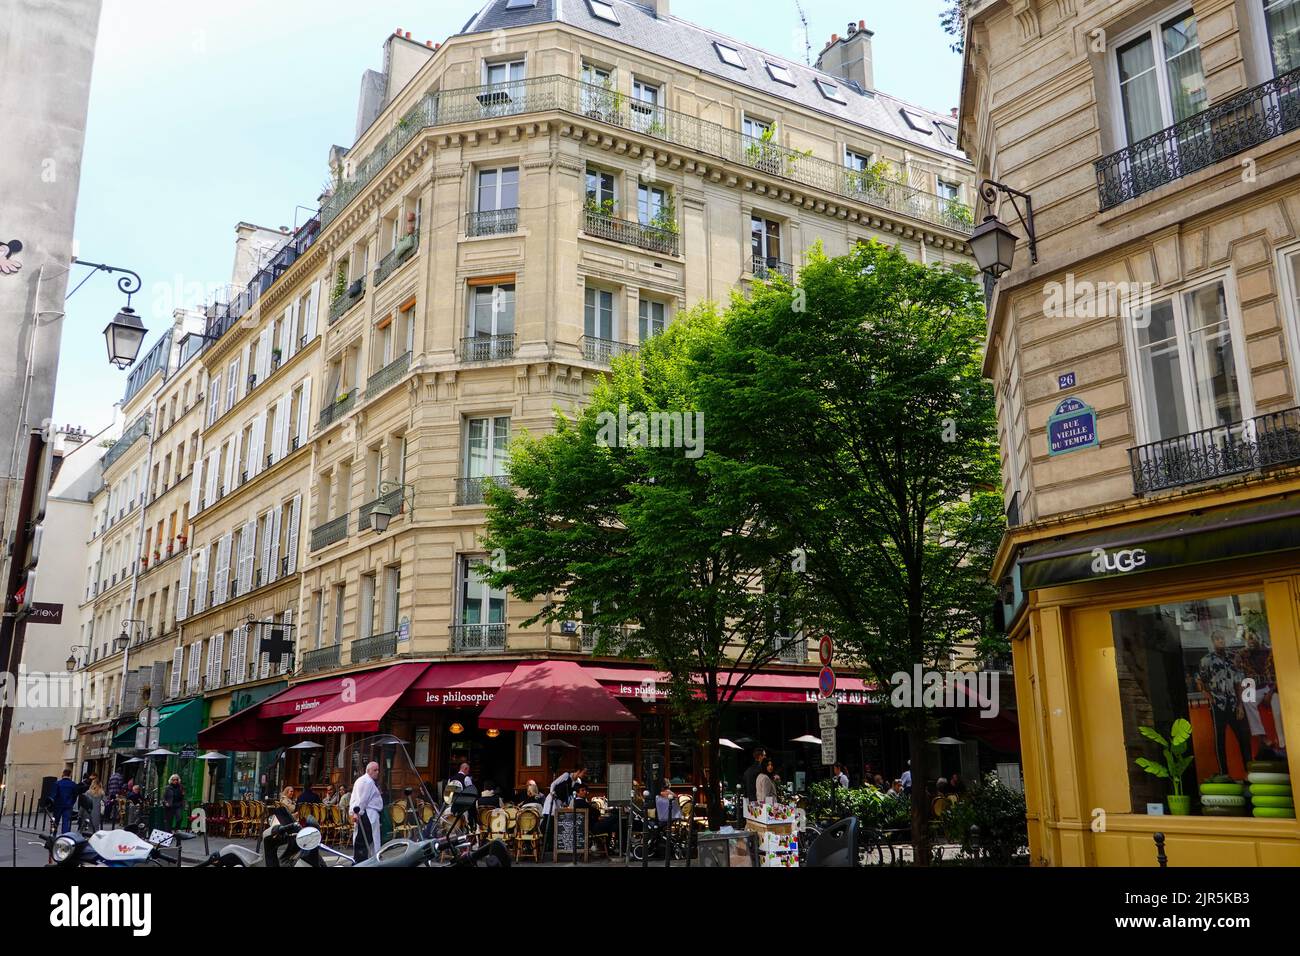 Persone che cenano sulla terrazza del ristorante Les Philosophes nel Marais, 4th Arrondissement, Parigi, Francia. Foto Stock